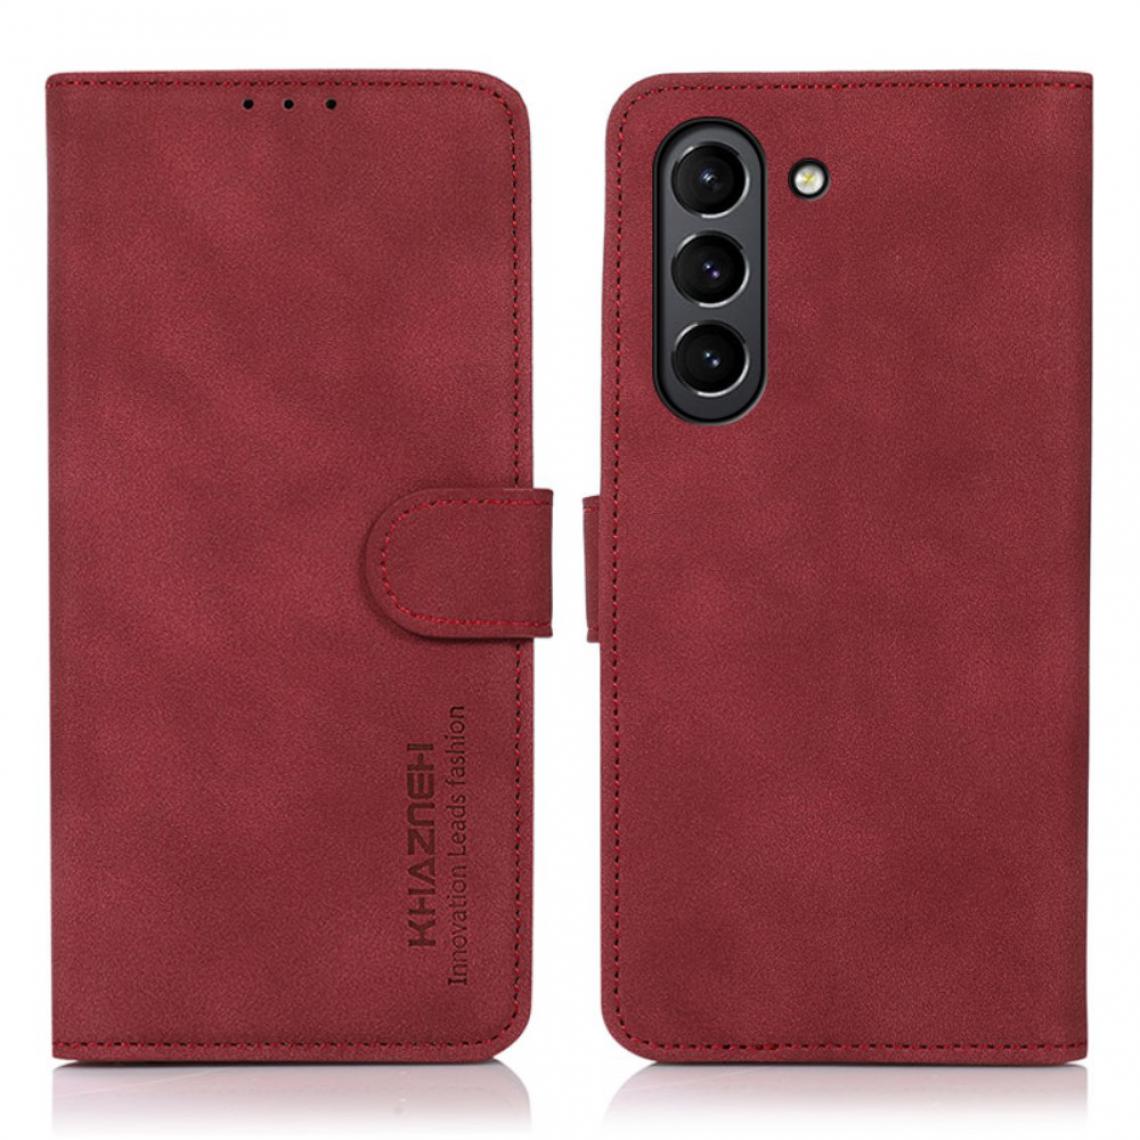 Other - Etui en PU avec support rouge pour votre Samsung Galaxy S21 FE/S21 Fan Edition - Coque, étui smartphone